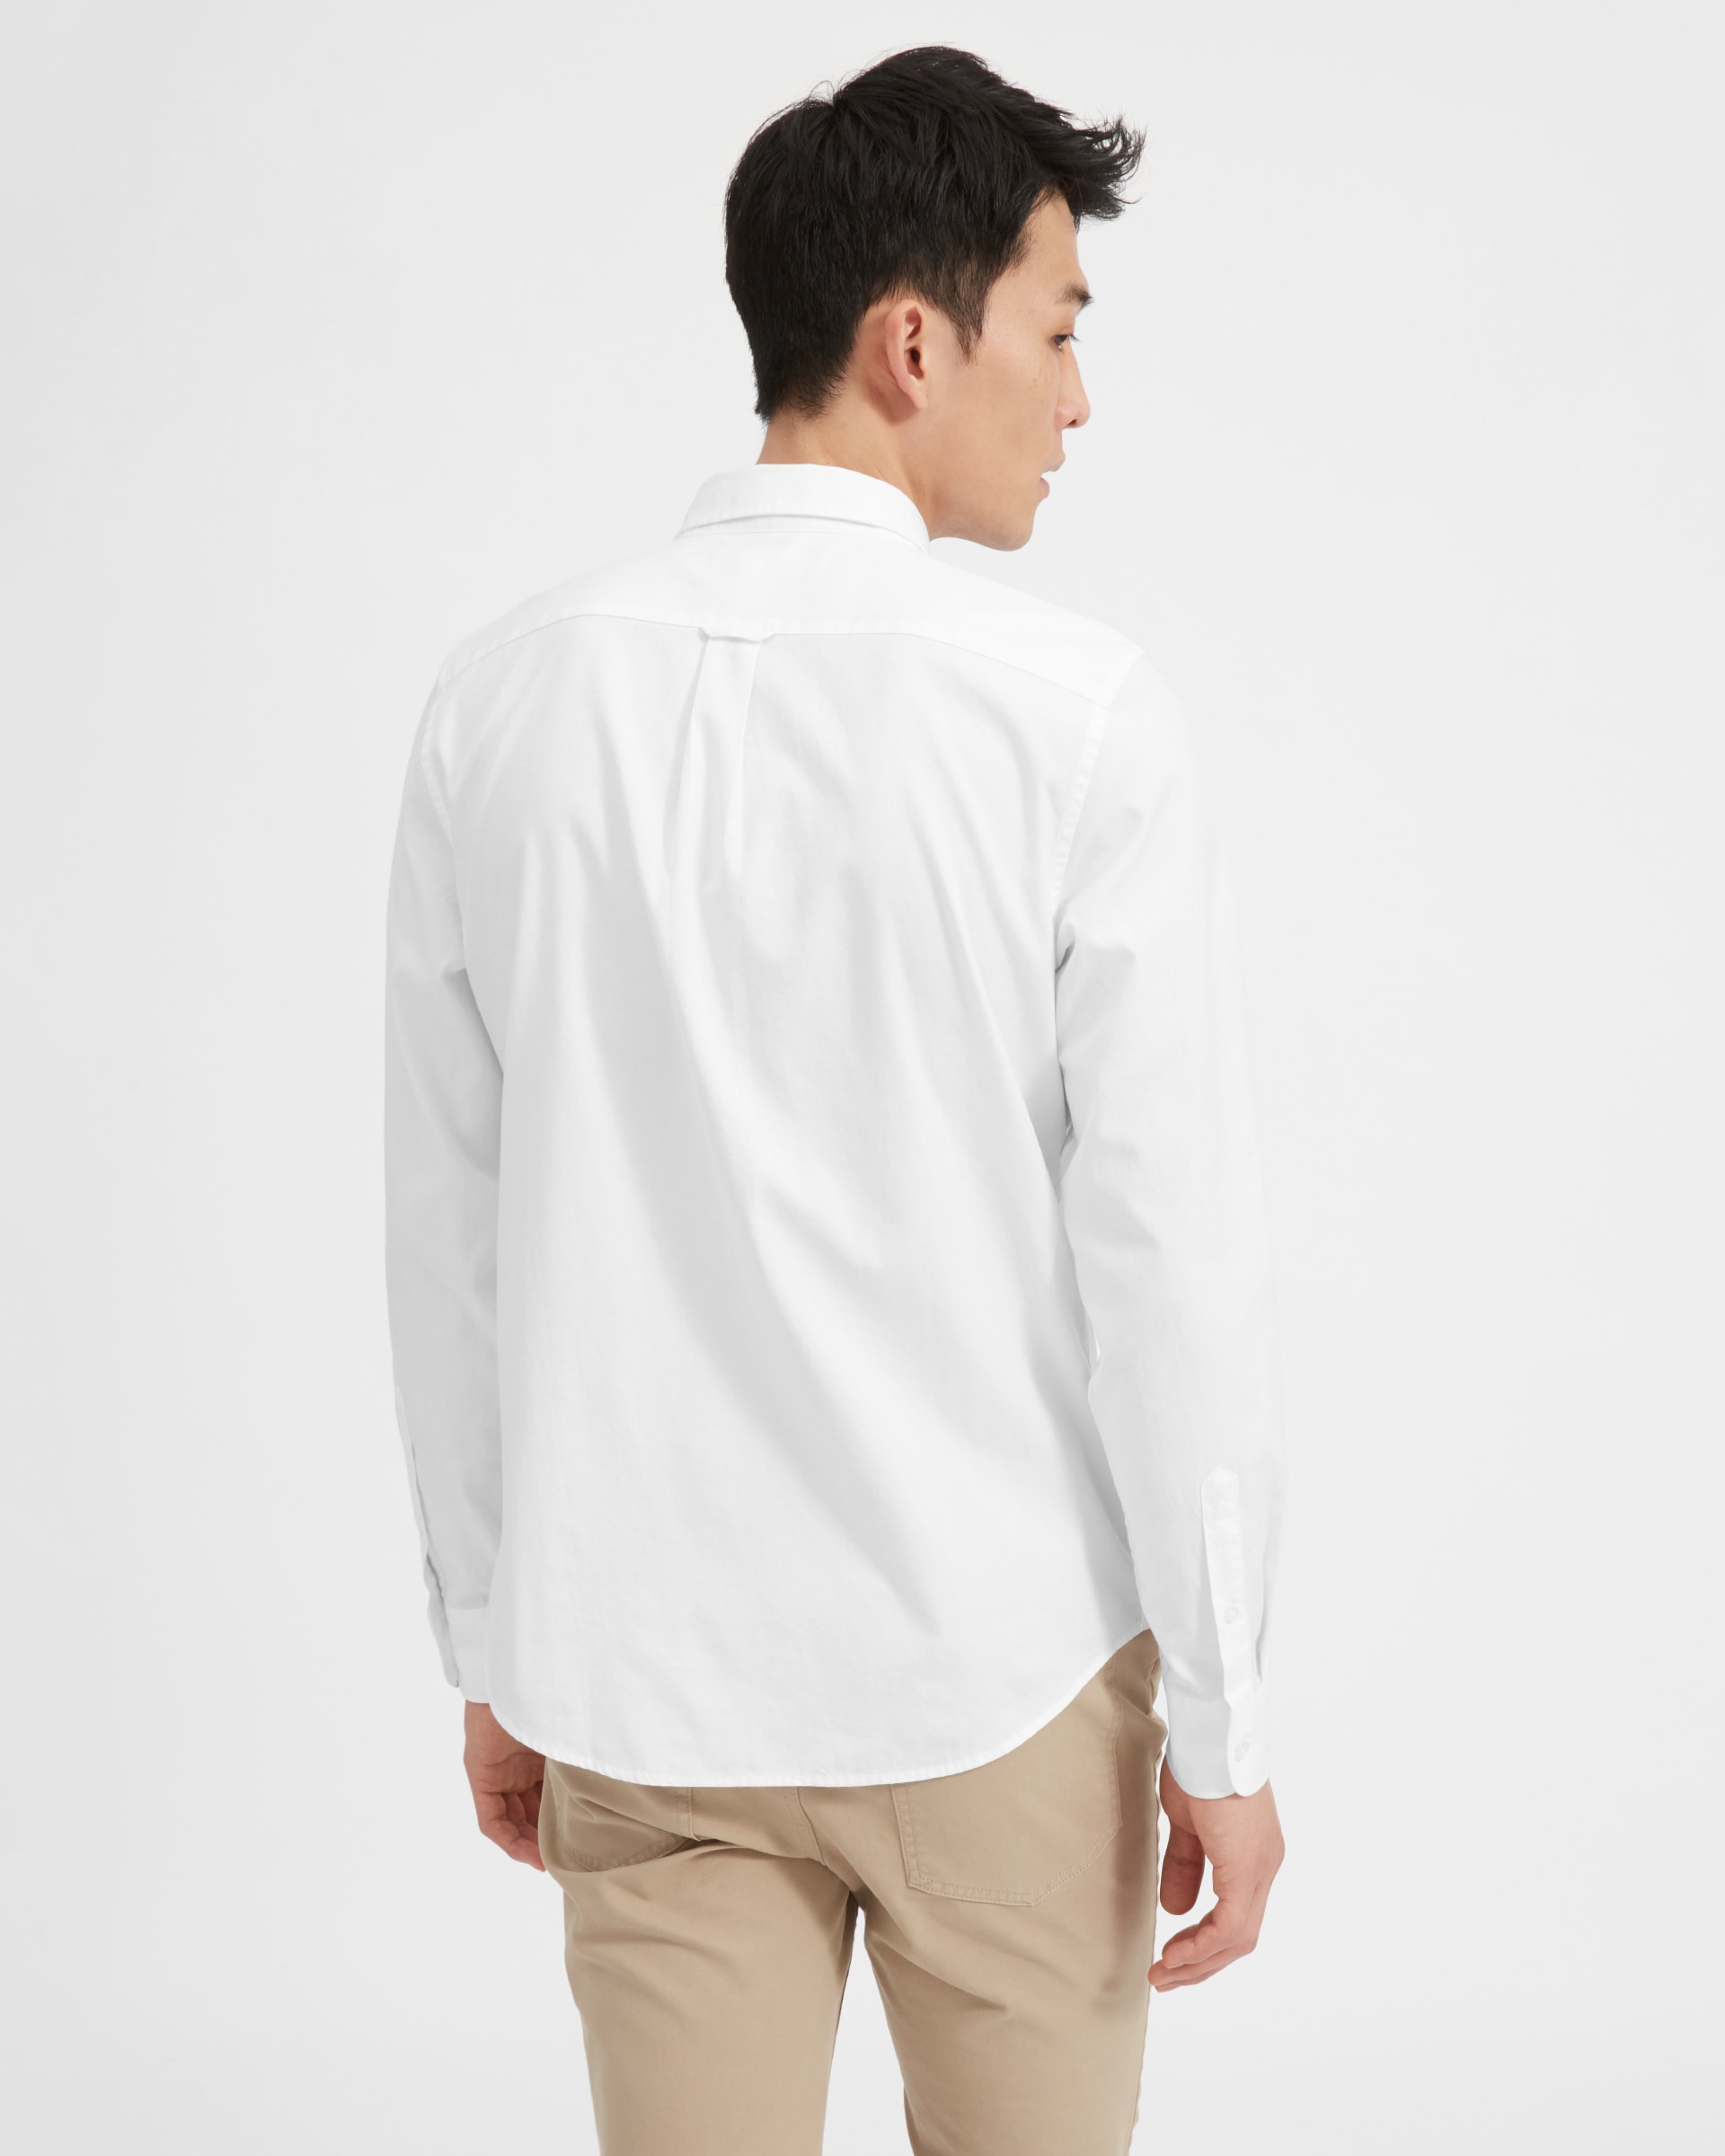 The Air Oxford Shirt White – Everlane